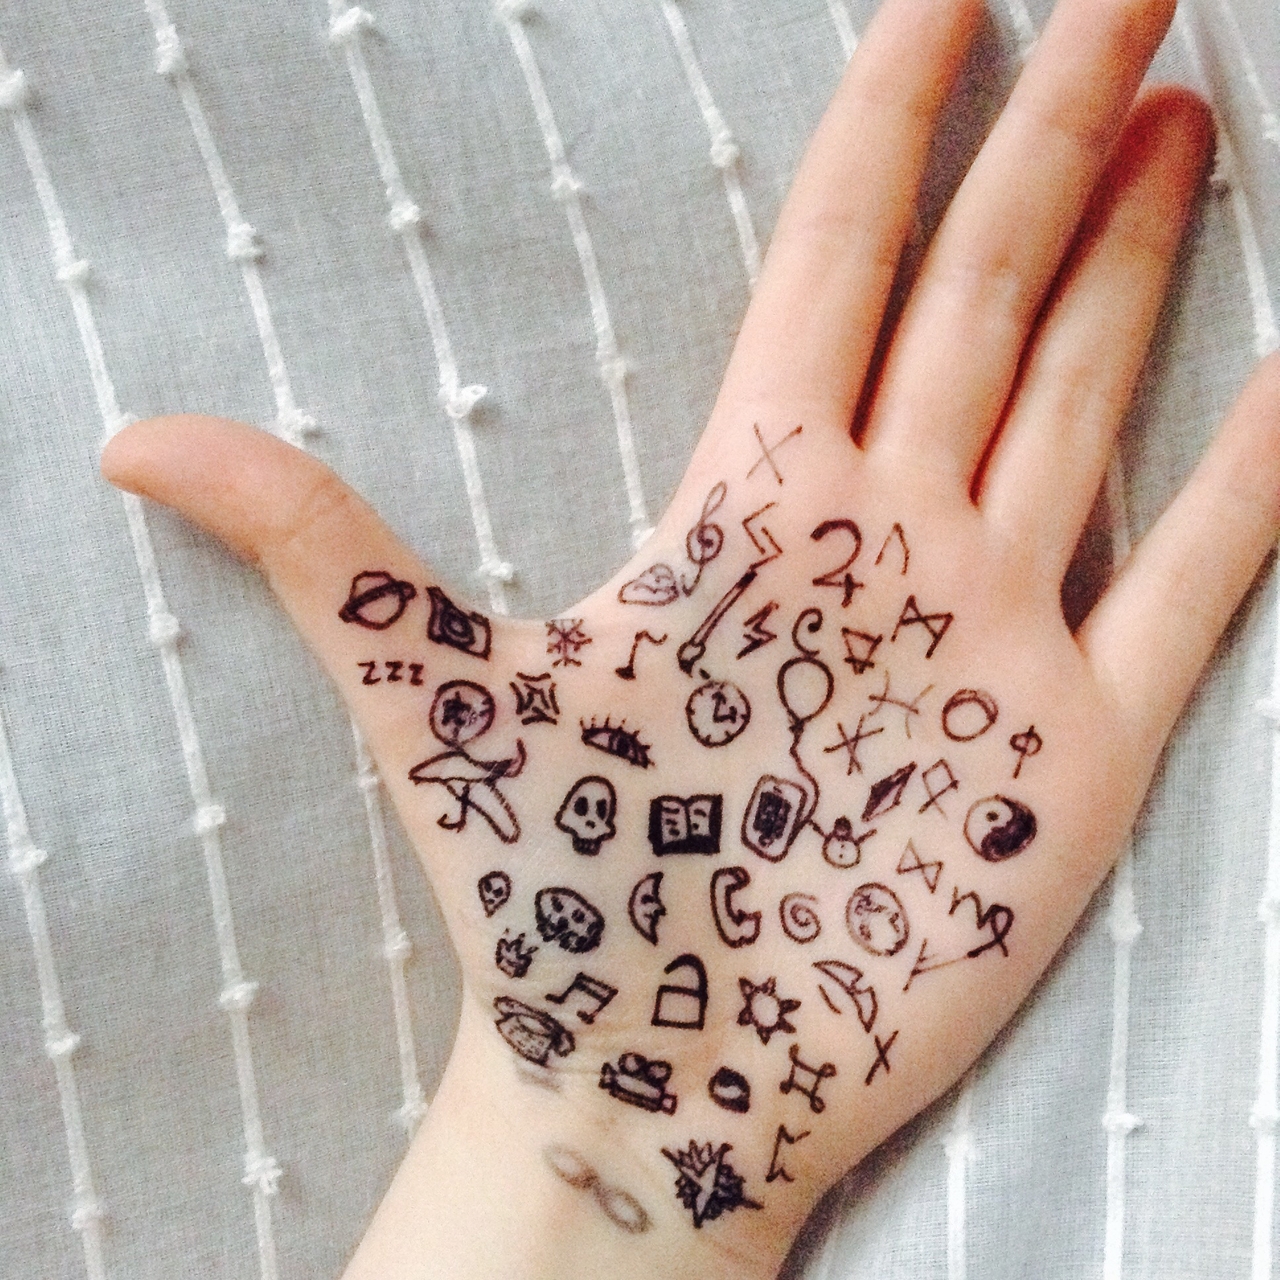 Татуировка на руке ручкой: как это легко сделать и не навредить здоровью - азинский.рф